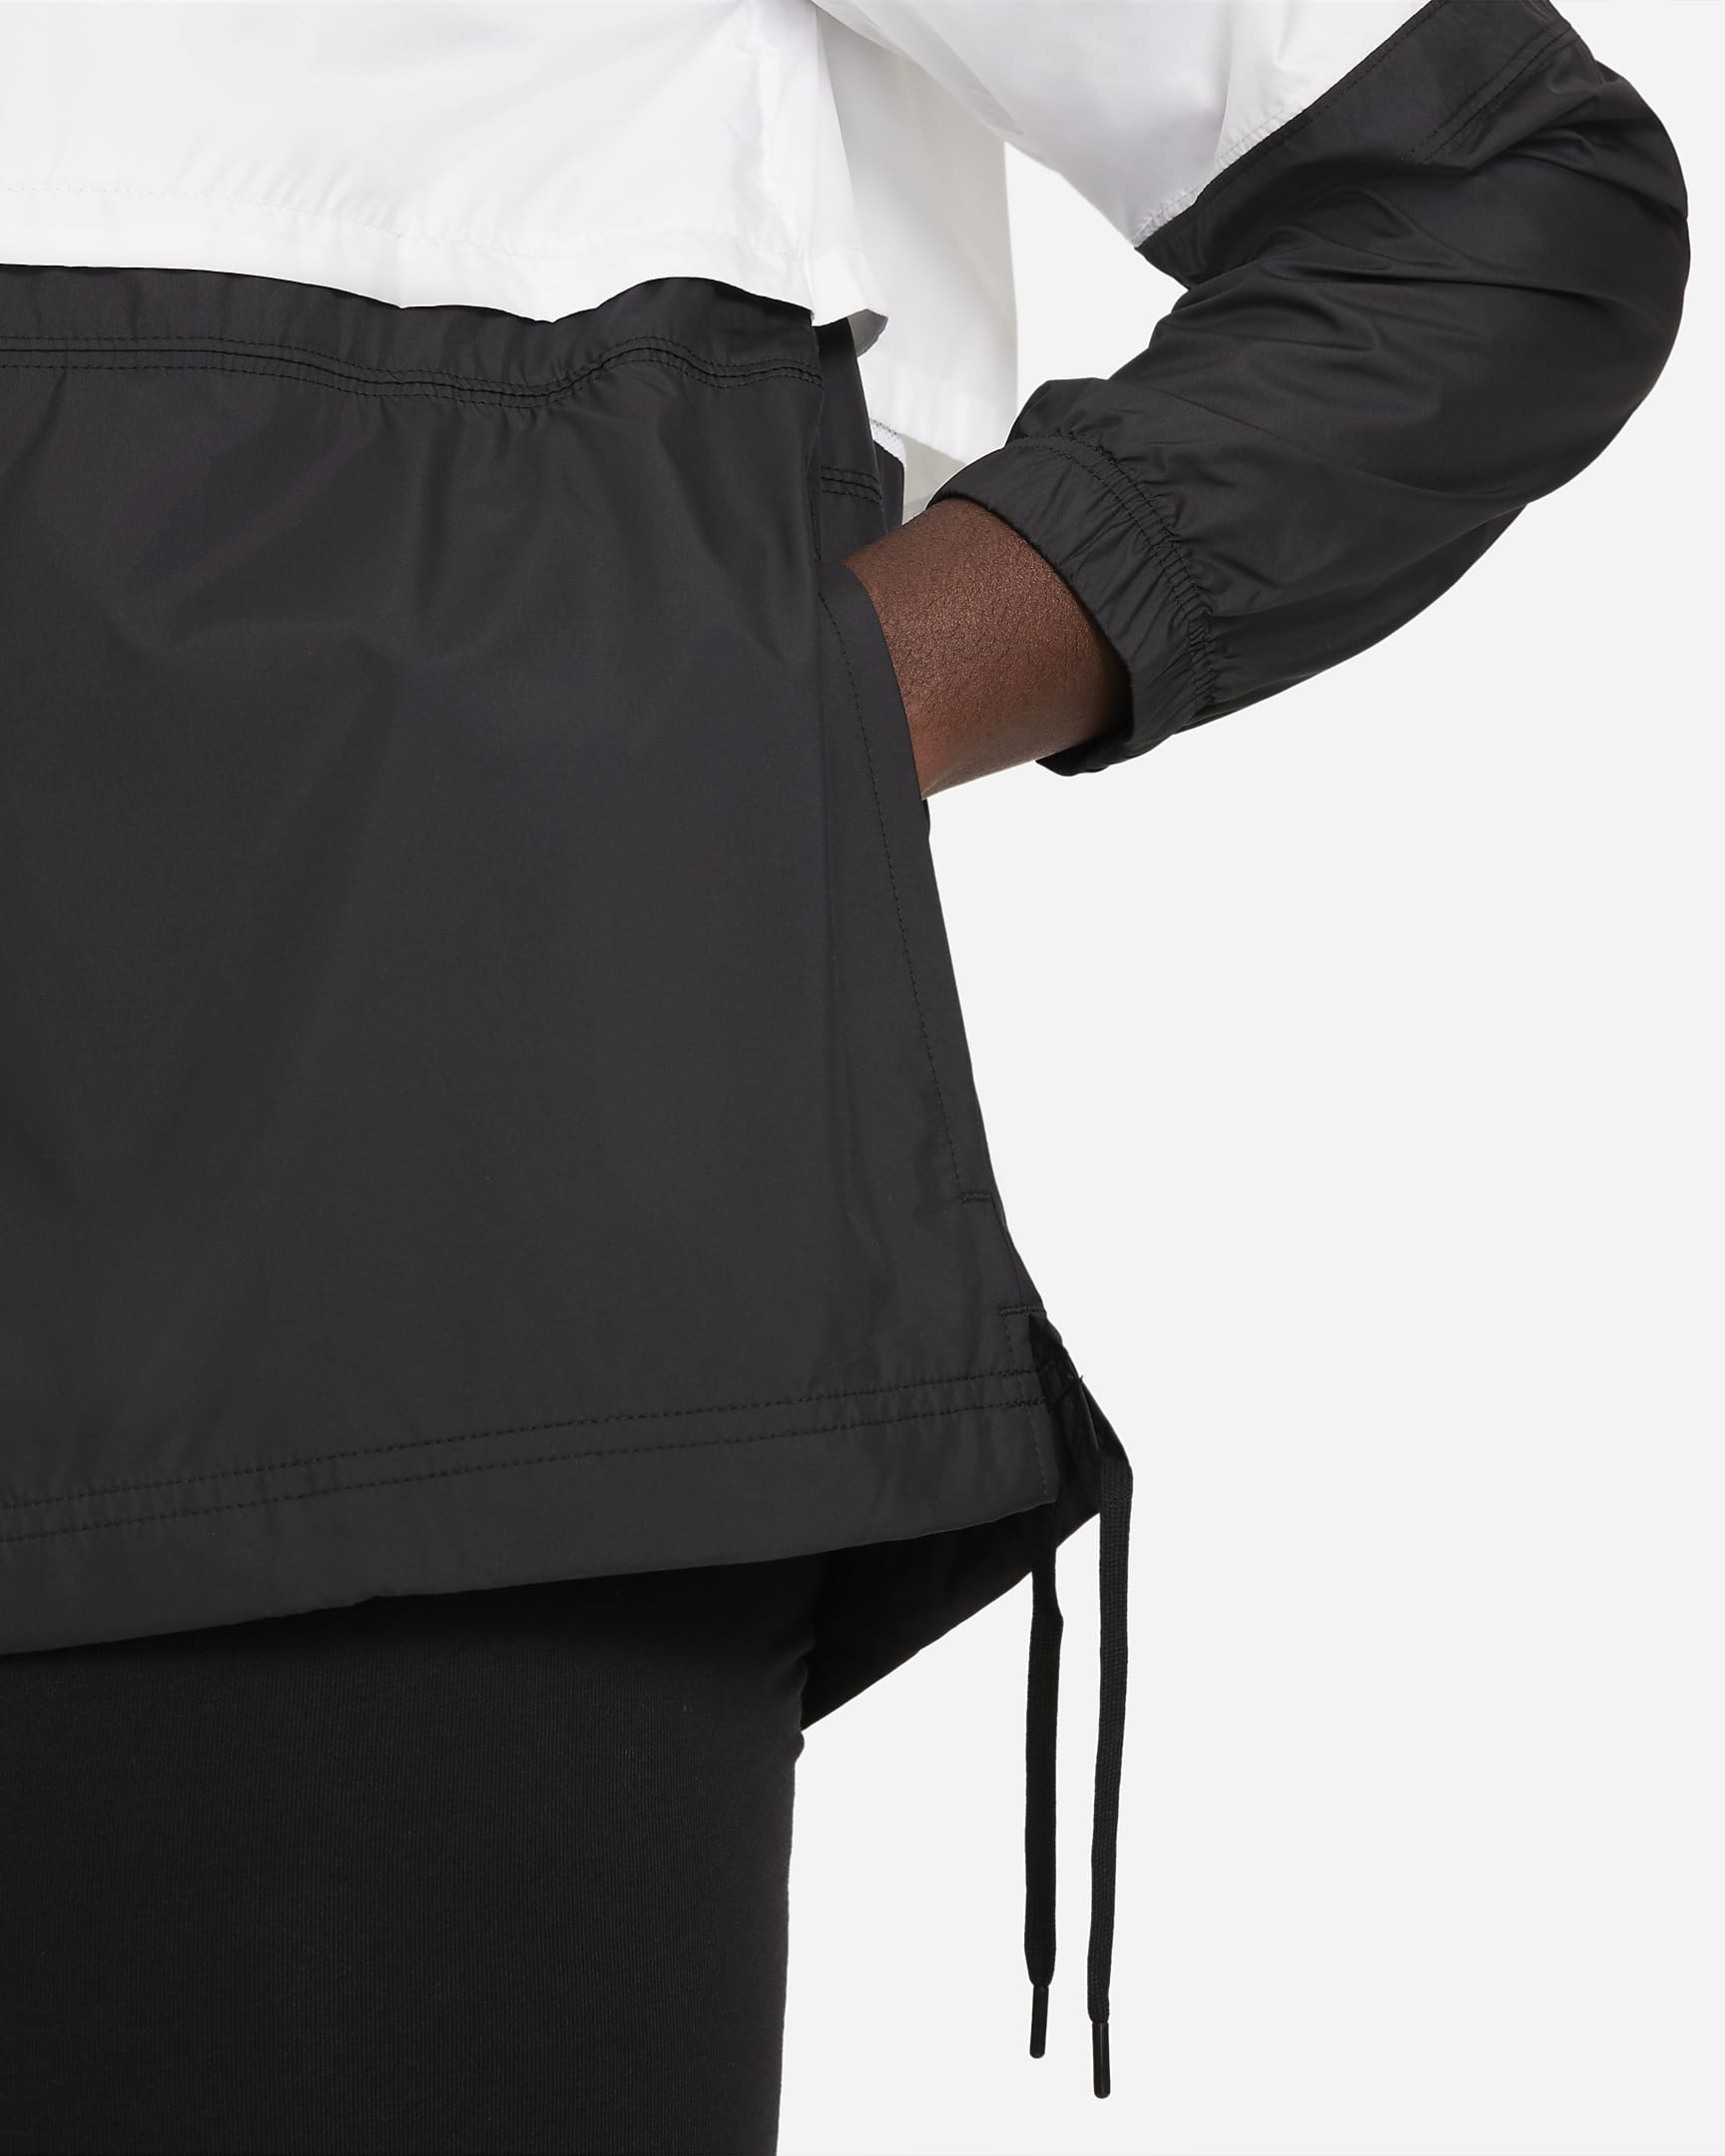 Nike Sportswear Women's Woven Jacket (Plus Size). Nike.com